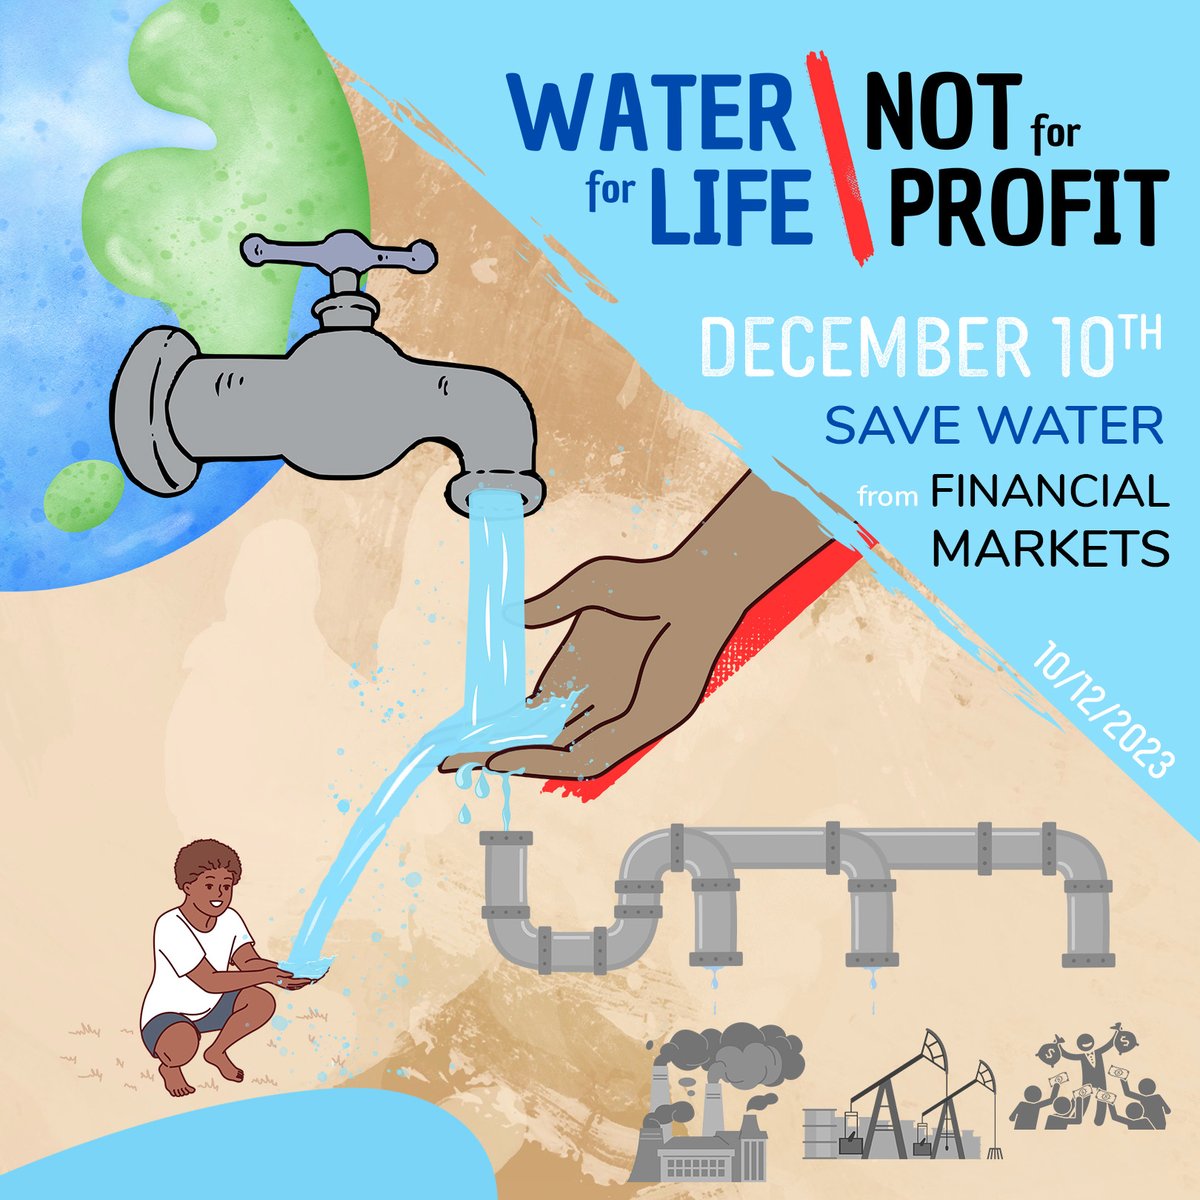 2e journée de la campagne #WaterForLifeNotForProfit 

La #privatisation des ressources en eau menace l’accès en qualité et en quantité suffisante pour tous. Il s’agit du 2e risque de l’entrée de l’eau à la bourse.
ℹ️: bit.ly/eaupourlavie

#WaterHumanRight #COP28 #WaterForLife